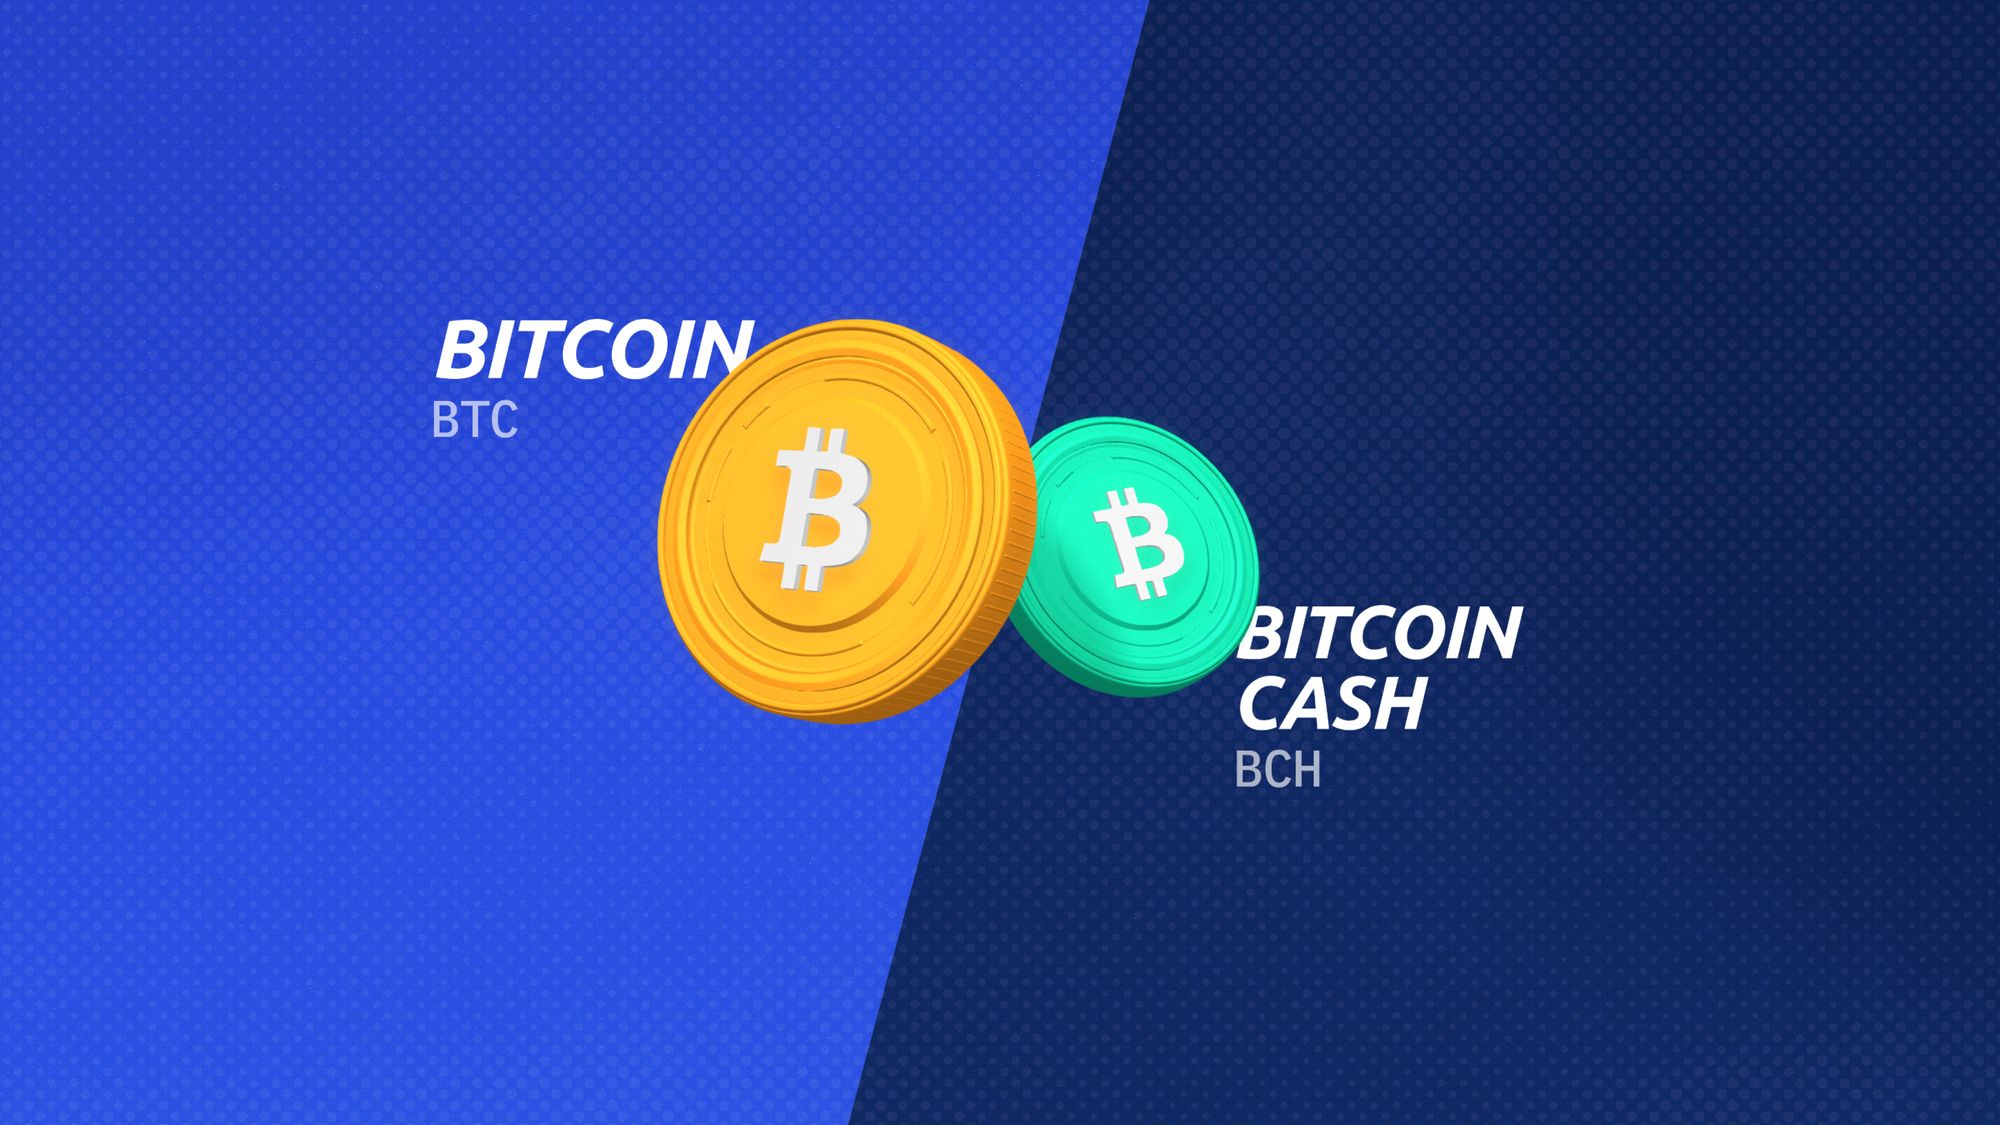 Bitcoin (BTC) so với Bitcoin Cash (BCH): Khám phá sự khác biệt về nguồn gốc, trường hợp sử dụng và tiềm năng đầu tư